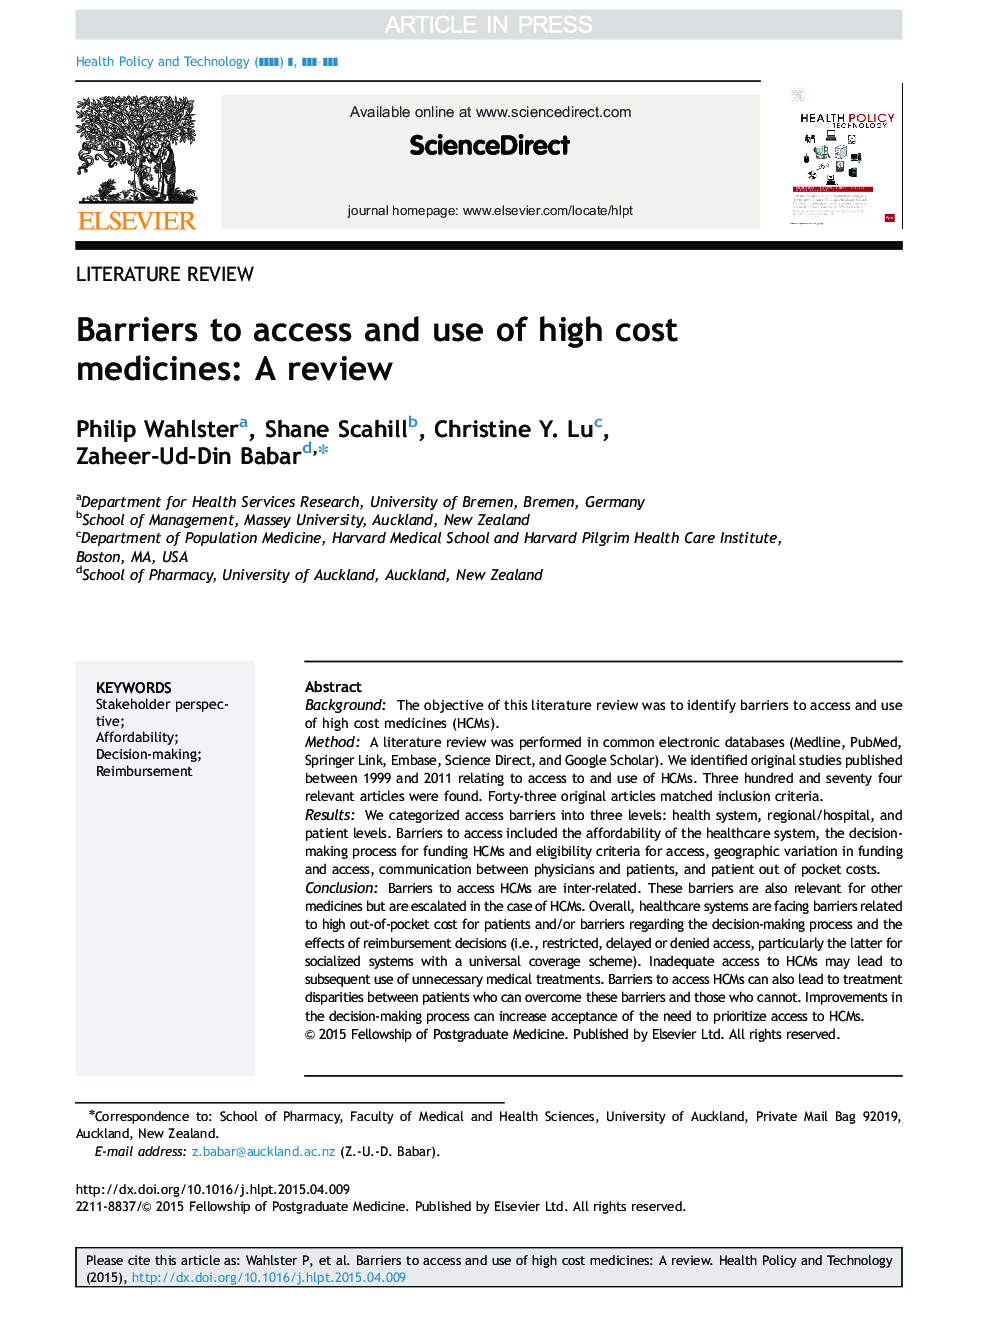 موانع دسترسی و استفاده از داروهای با هزینه بالا: بررسی 